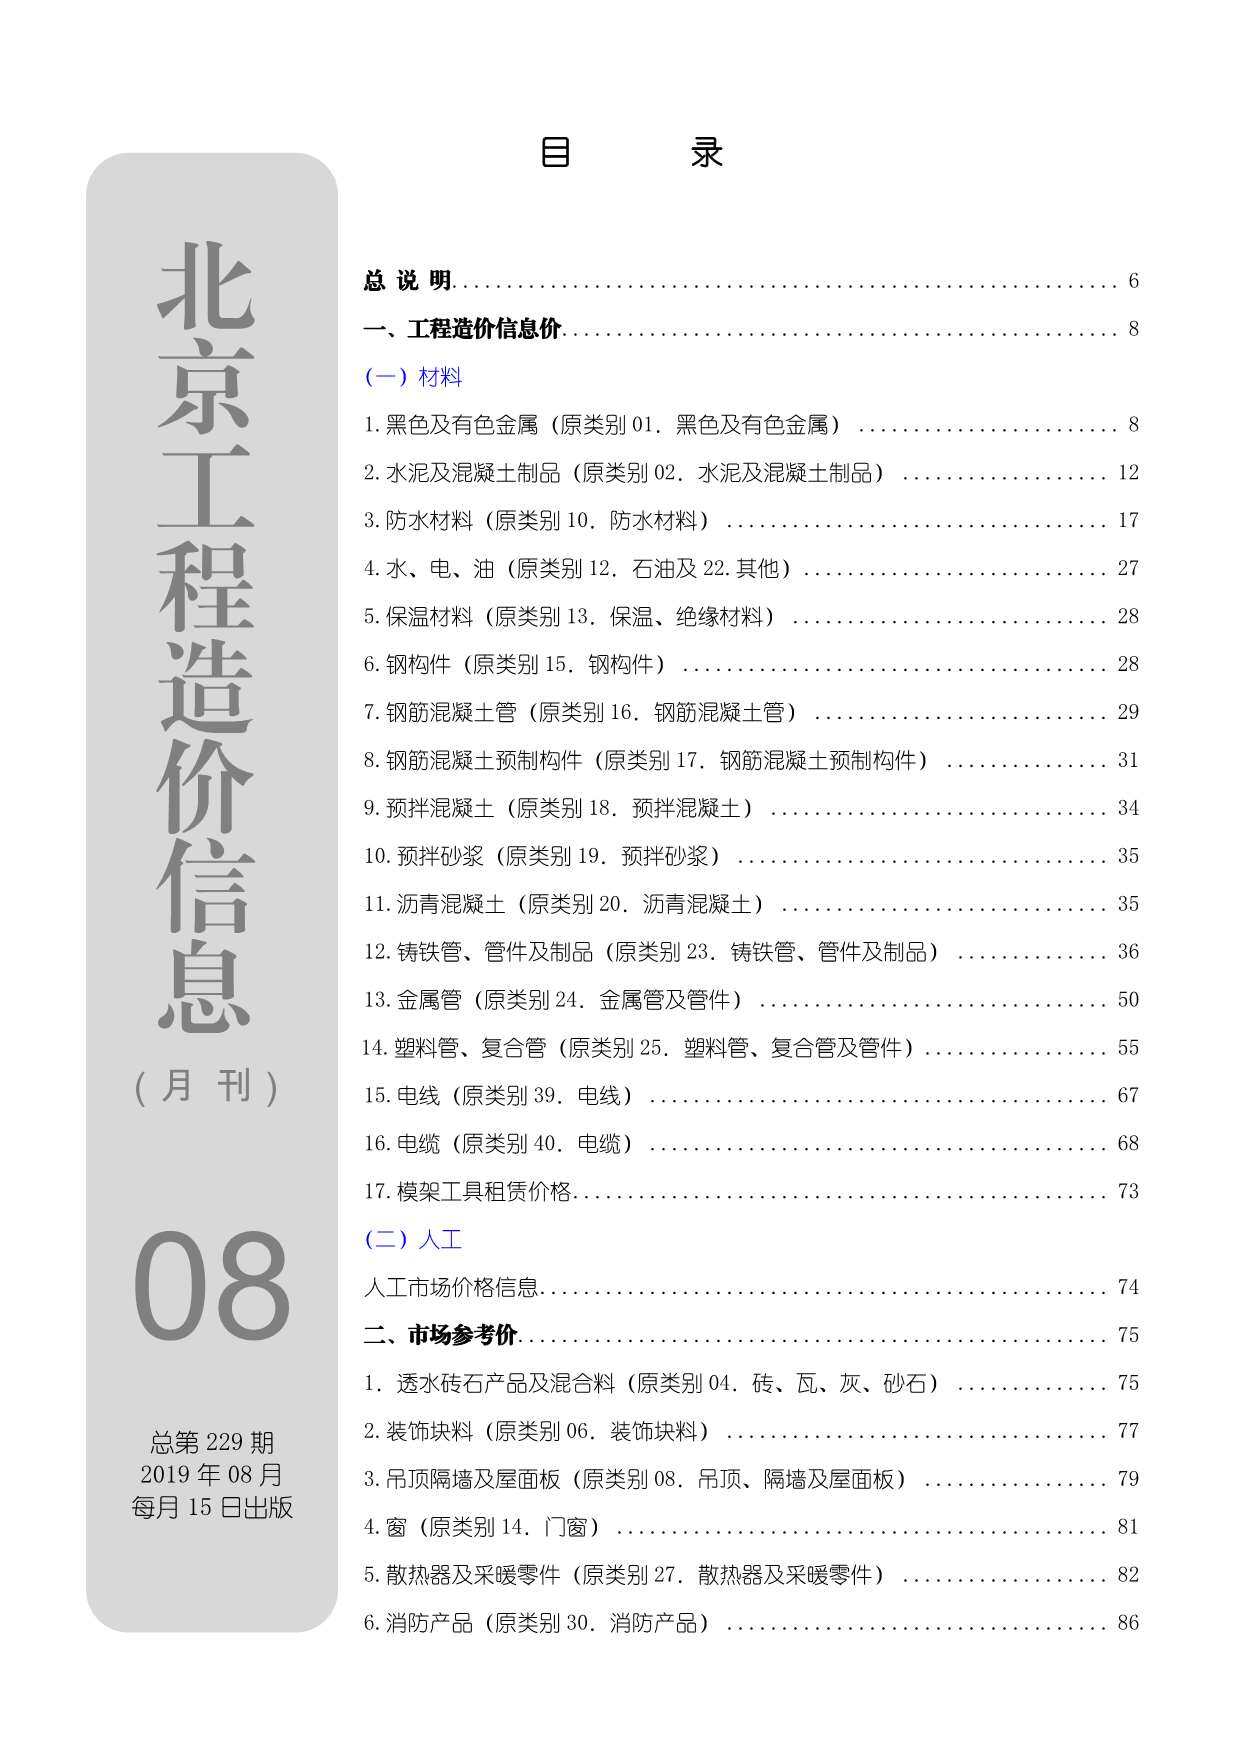 北京市2019年8月工程造价信息期刊